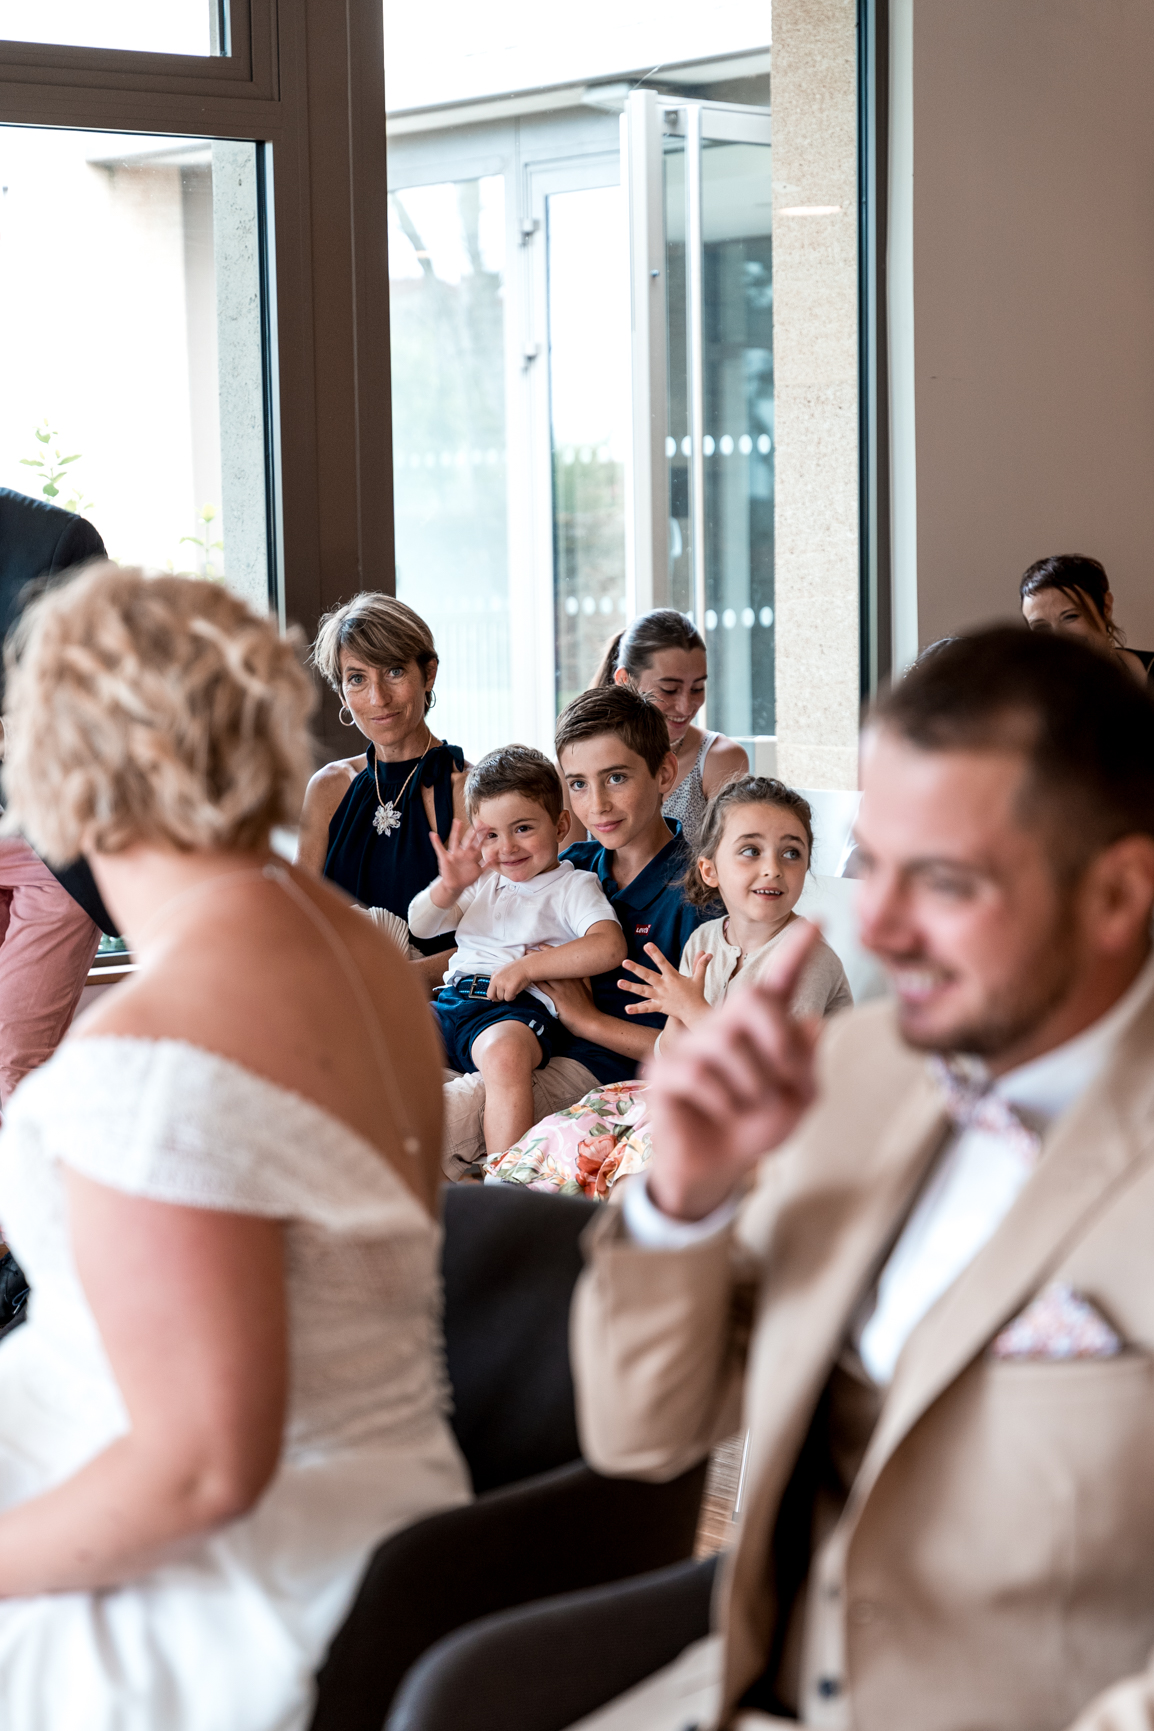 Amelie Charlet photographe reportage photo mariage mariés qui rigolent enfants qui sourient à la mariée